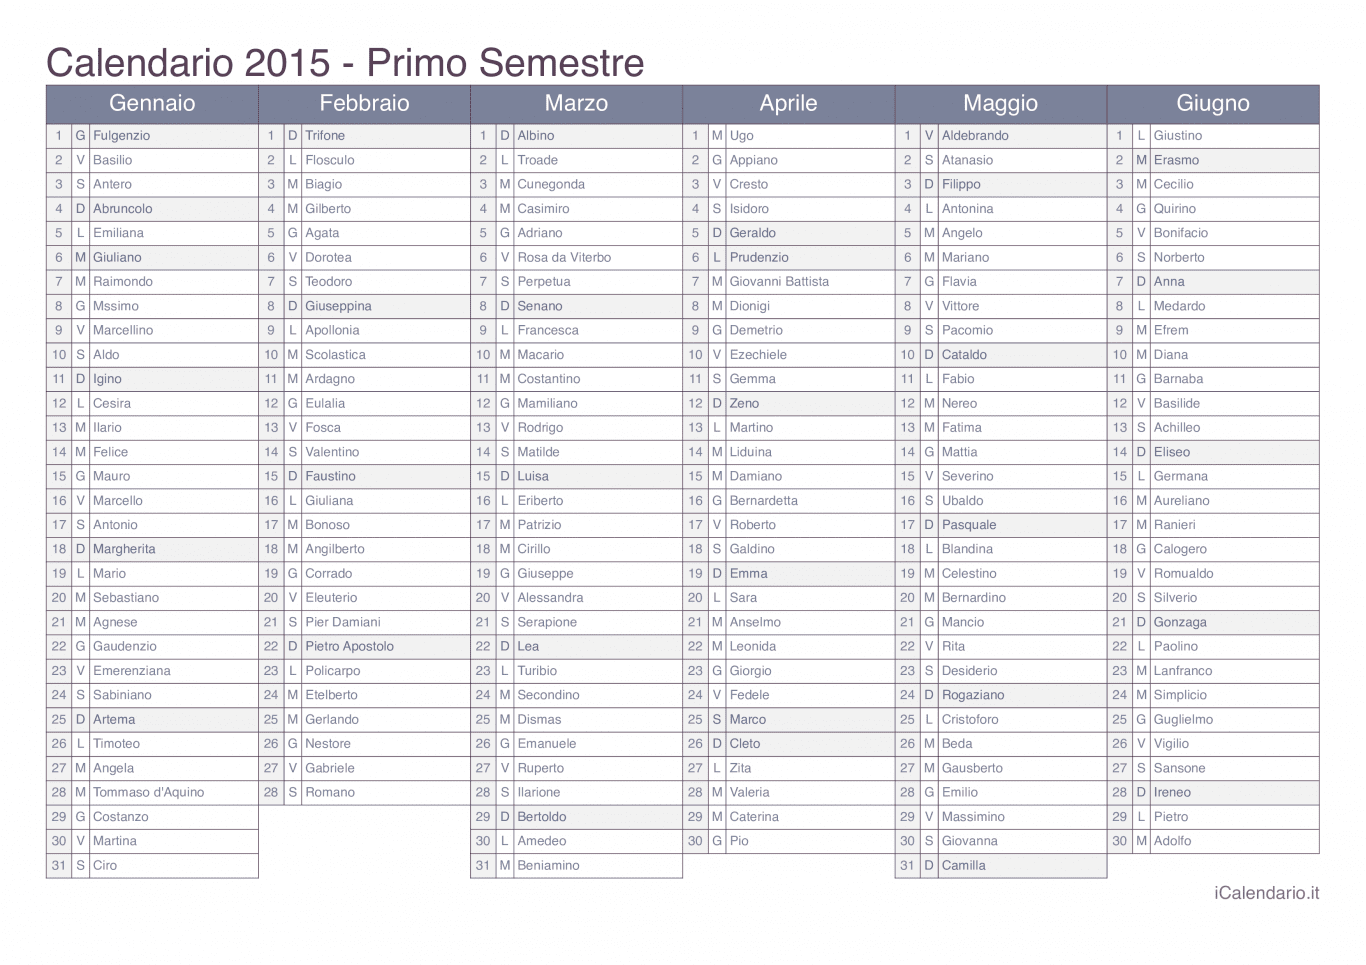 Calendario semestrale 2015 con santi e festivi - Office